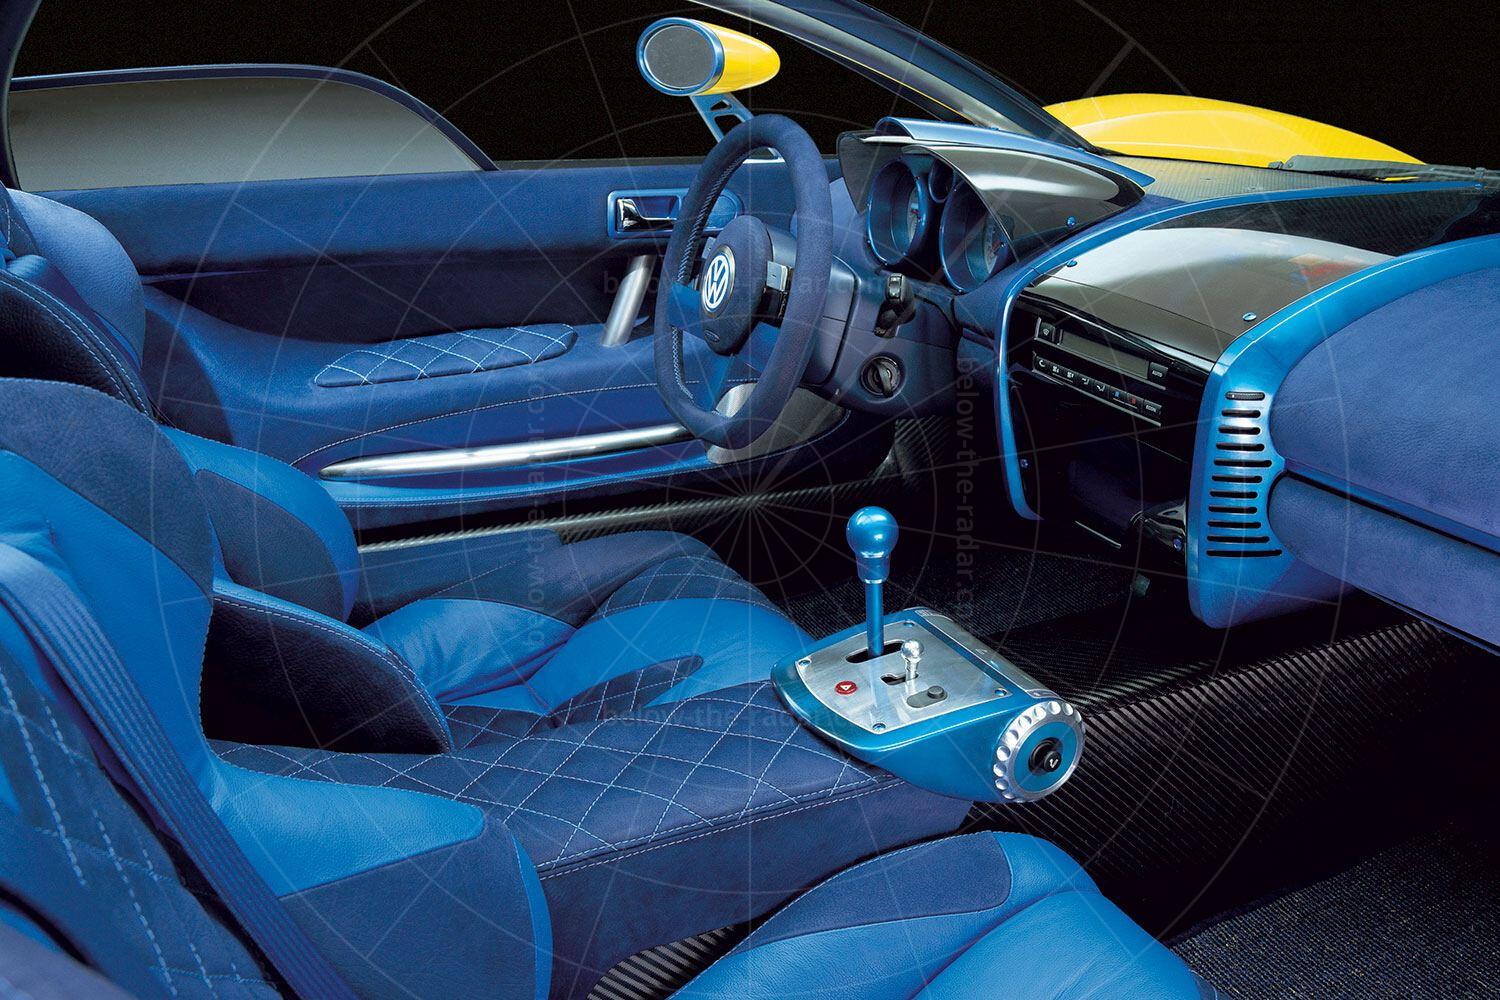 1997 Volkswagen W12 coupé interior Pic: Volkswagen | 1997 Volkswagen W12 coupé interior